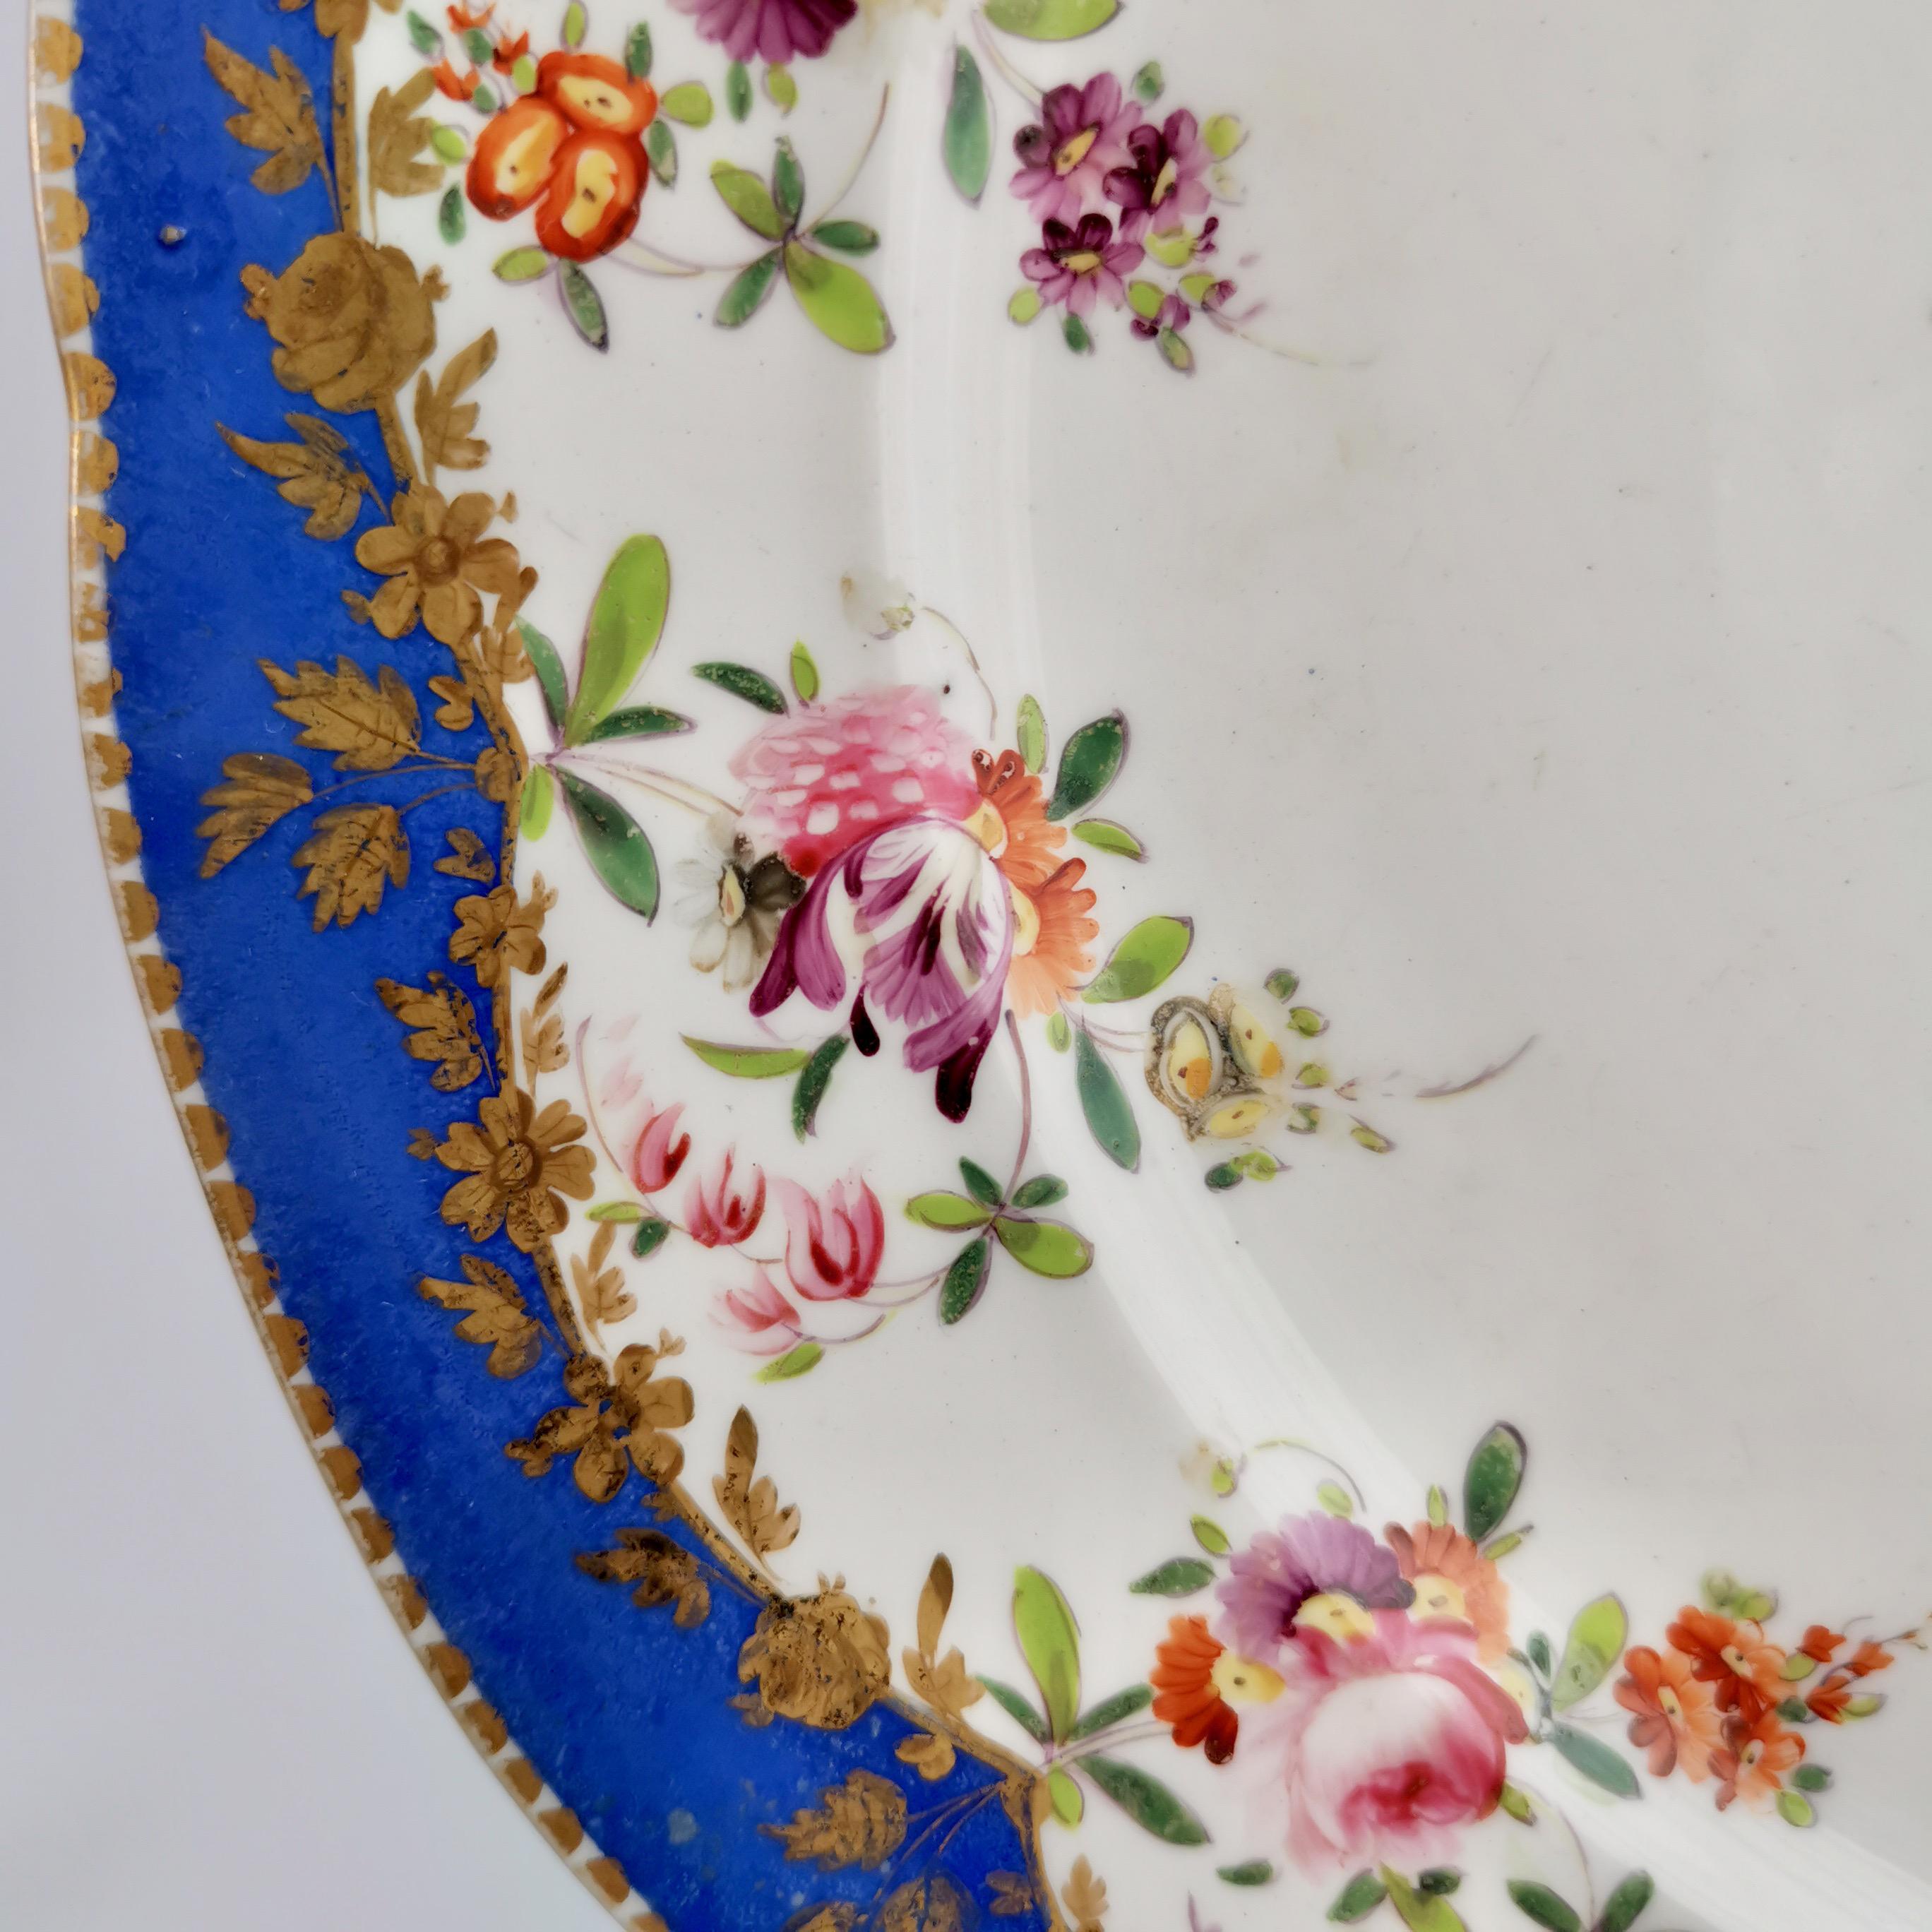 Coalport Porcelain Plate, Royal Blue with Flower Garlands, 1820-1825 2